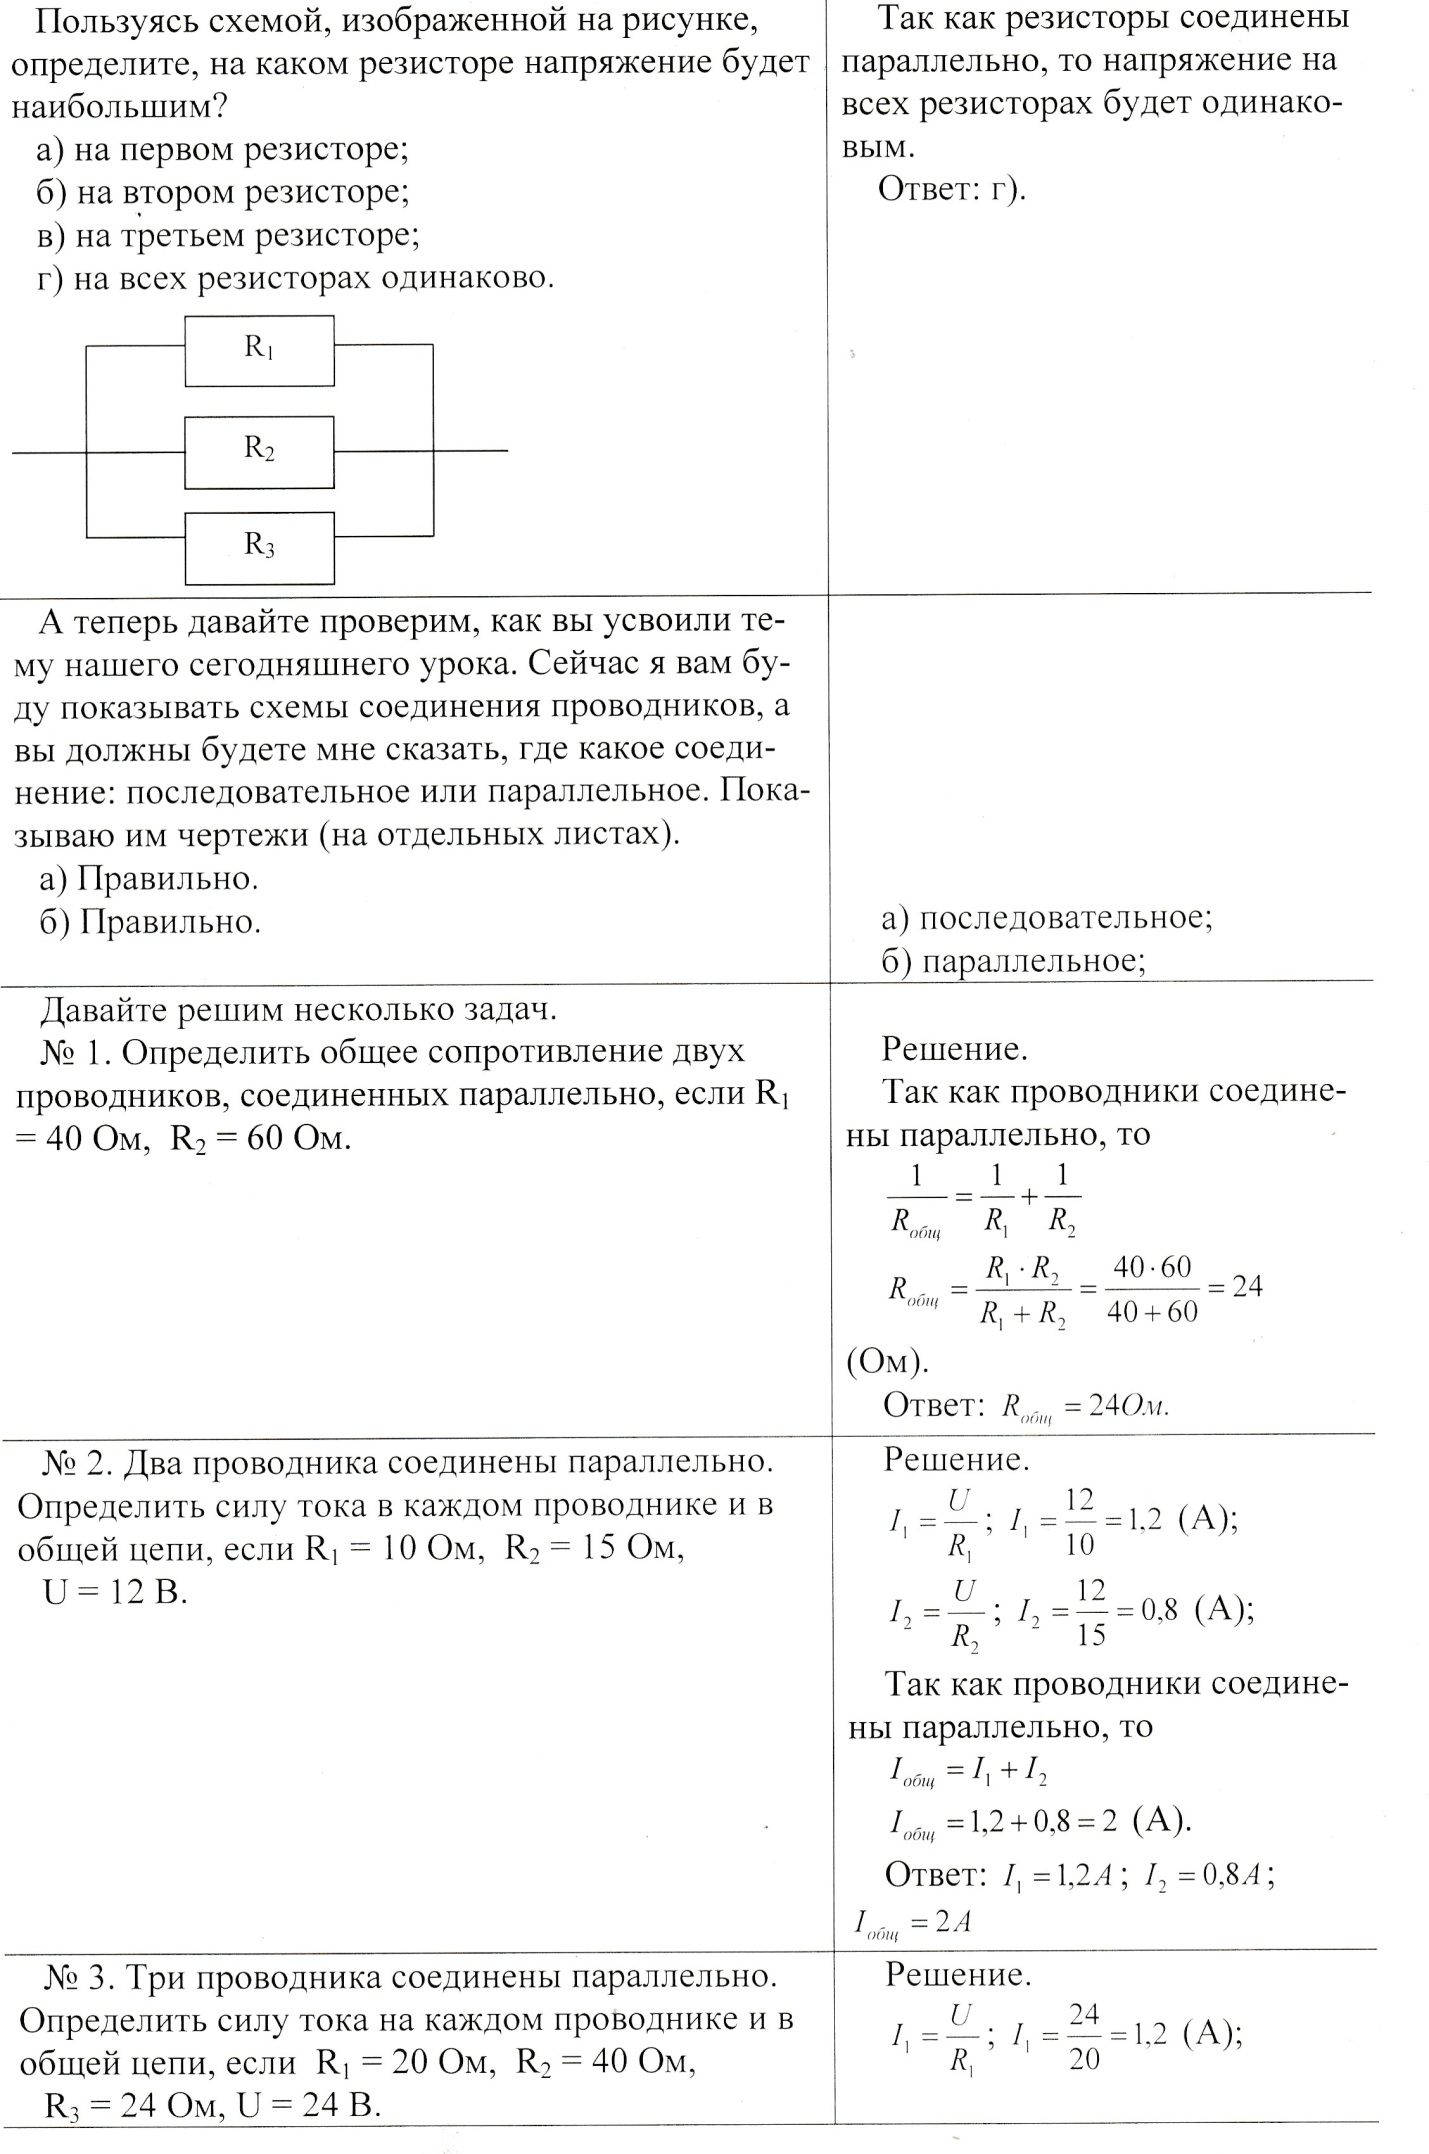 Конспект по физике на тему:Параллельное соединение электрических устройств (8 класс)